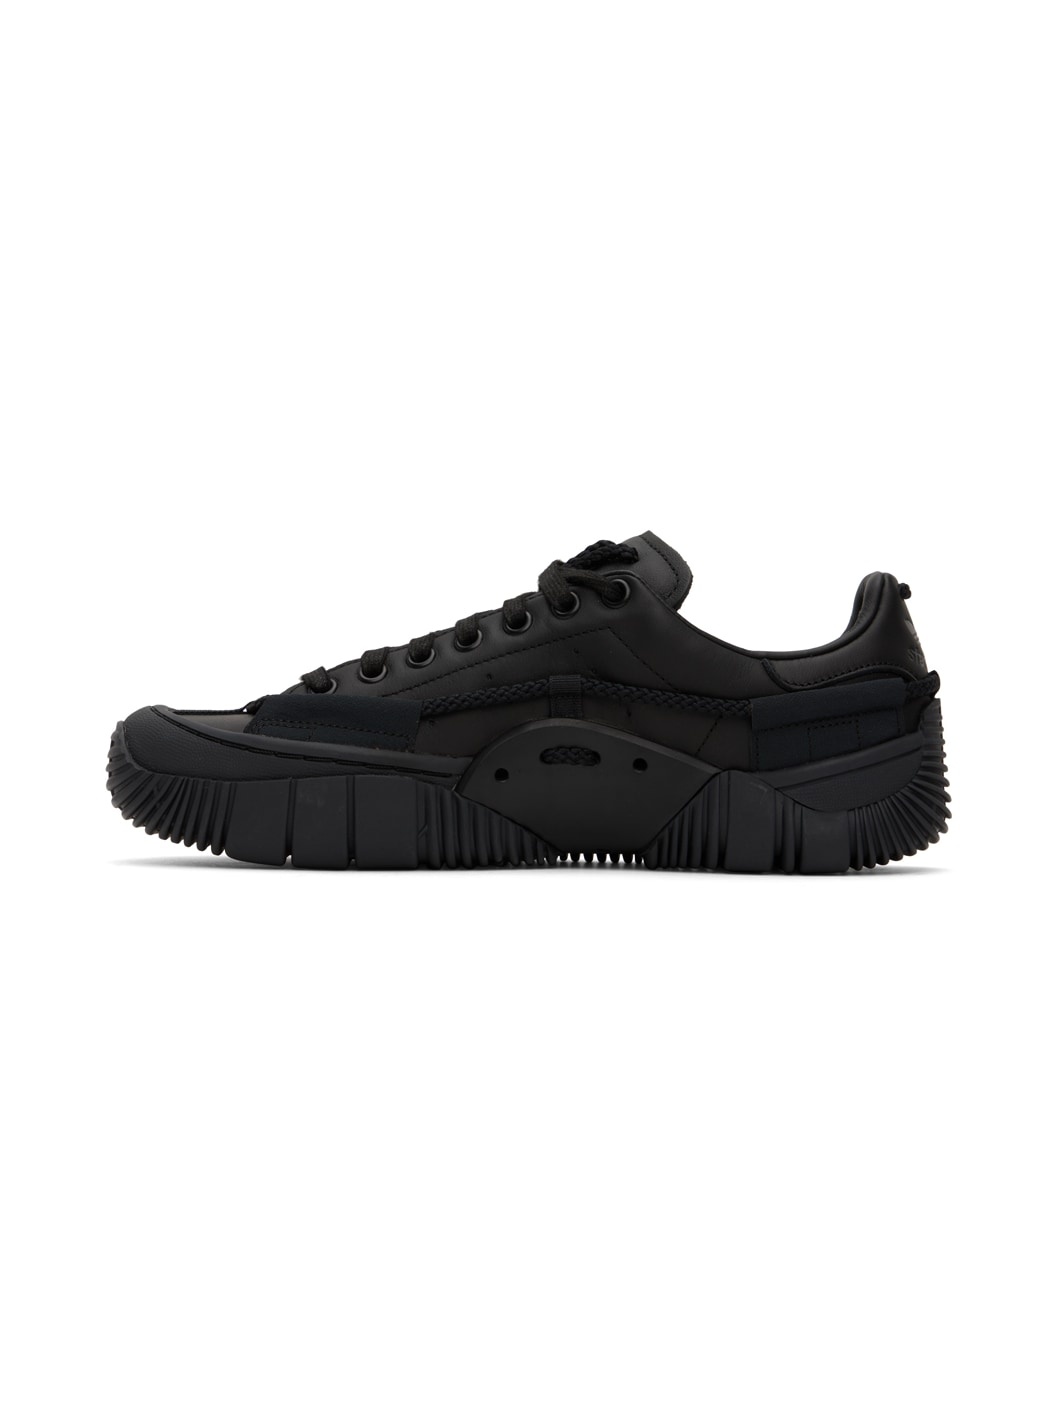 Black adidas Originals Edition Scuba Stan Smith Sneakers - 3